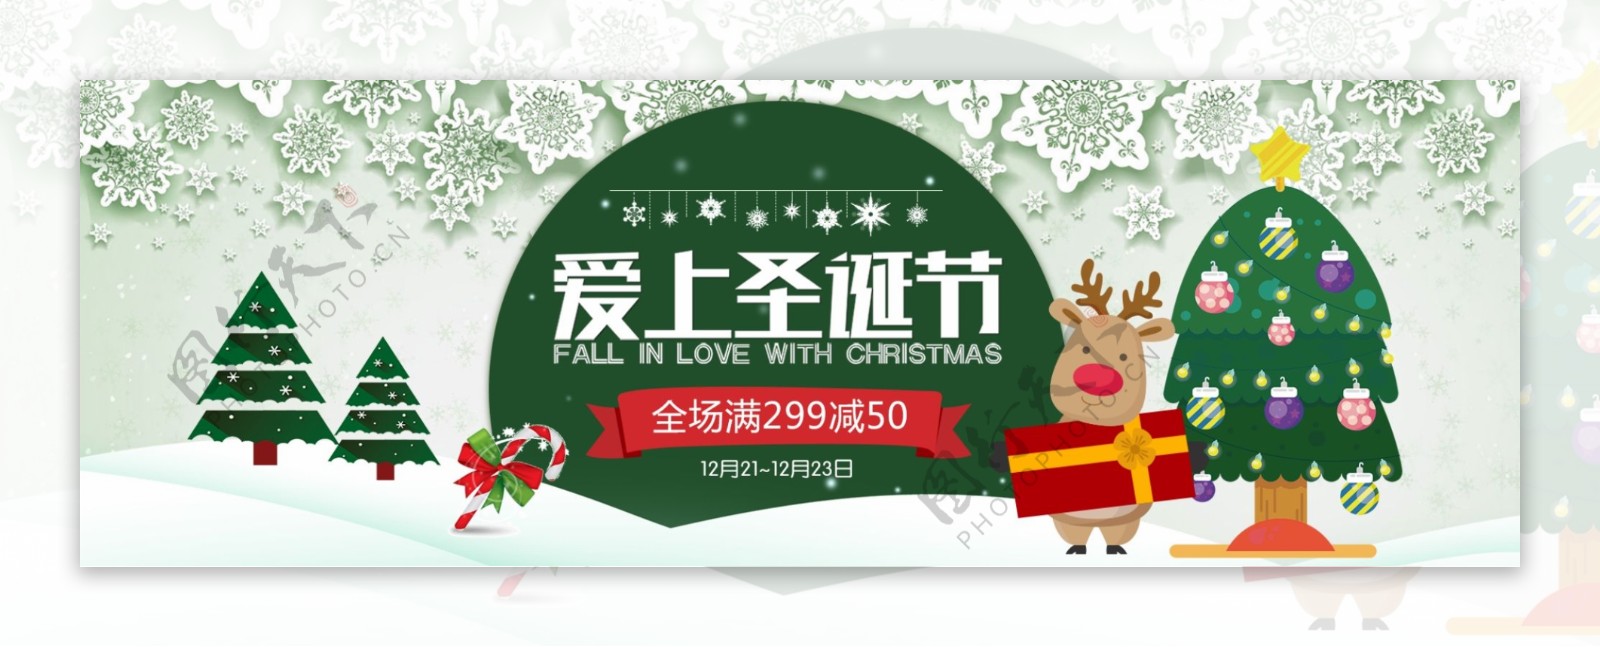 绿色雪花麋鹿圣诞树圣诞节淘宝banner